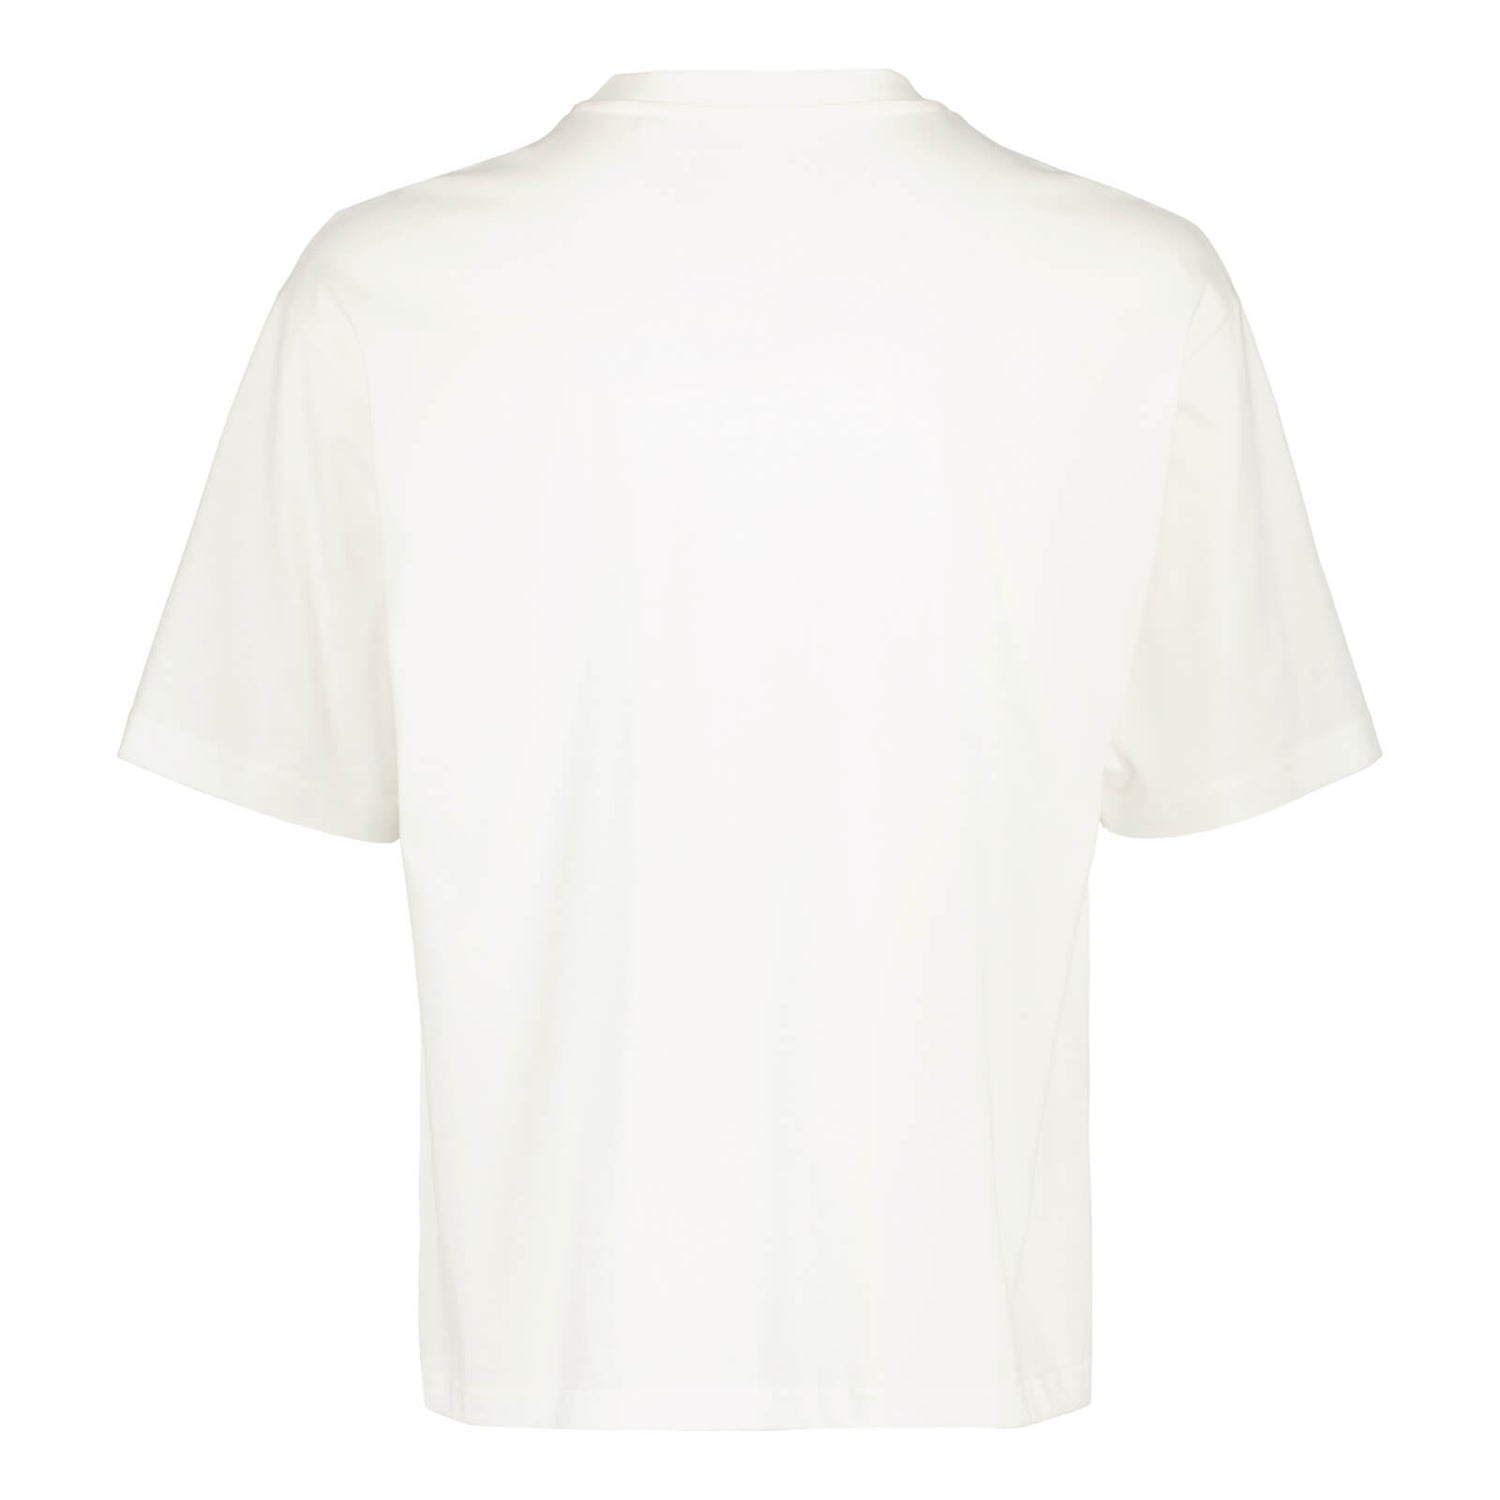 Littipeukku Box T-shirt, Off-white